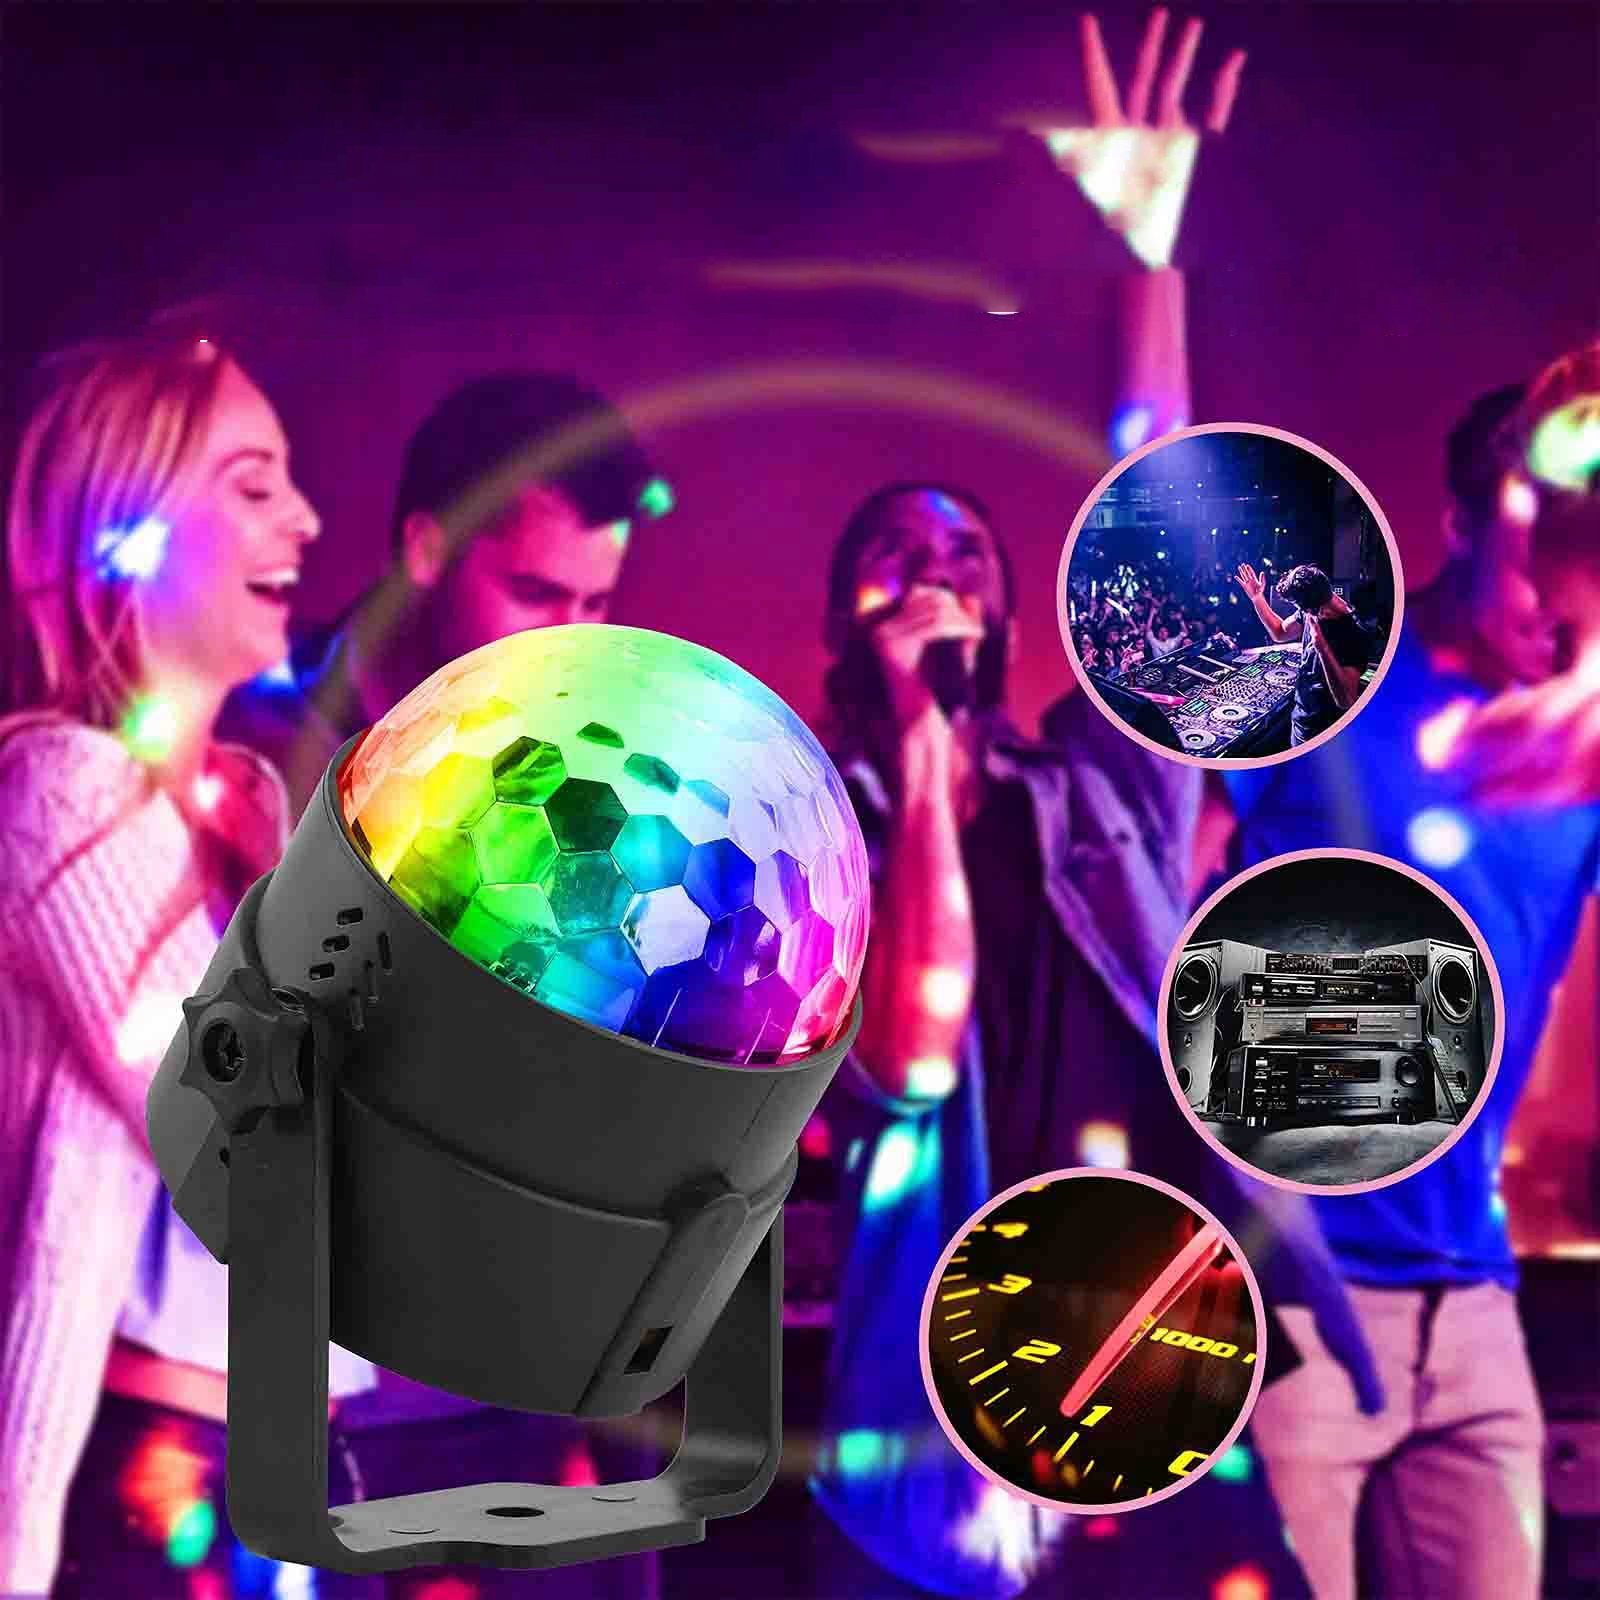 Диско-шар проектор RGB светодиодный диско-прожектор вес продукта с единичной упаковкой 0,25 кг